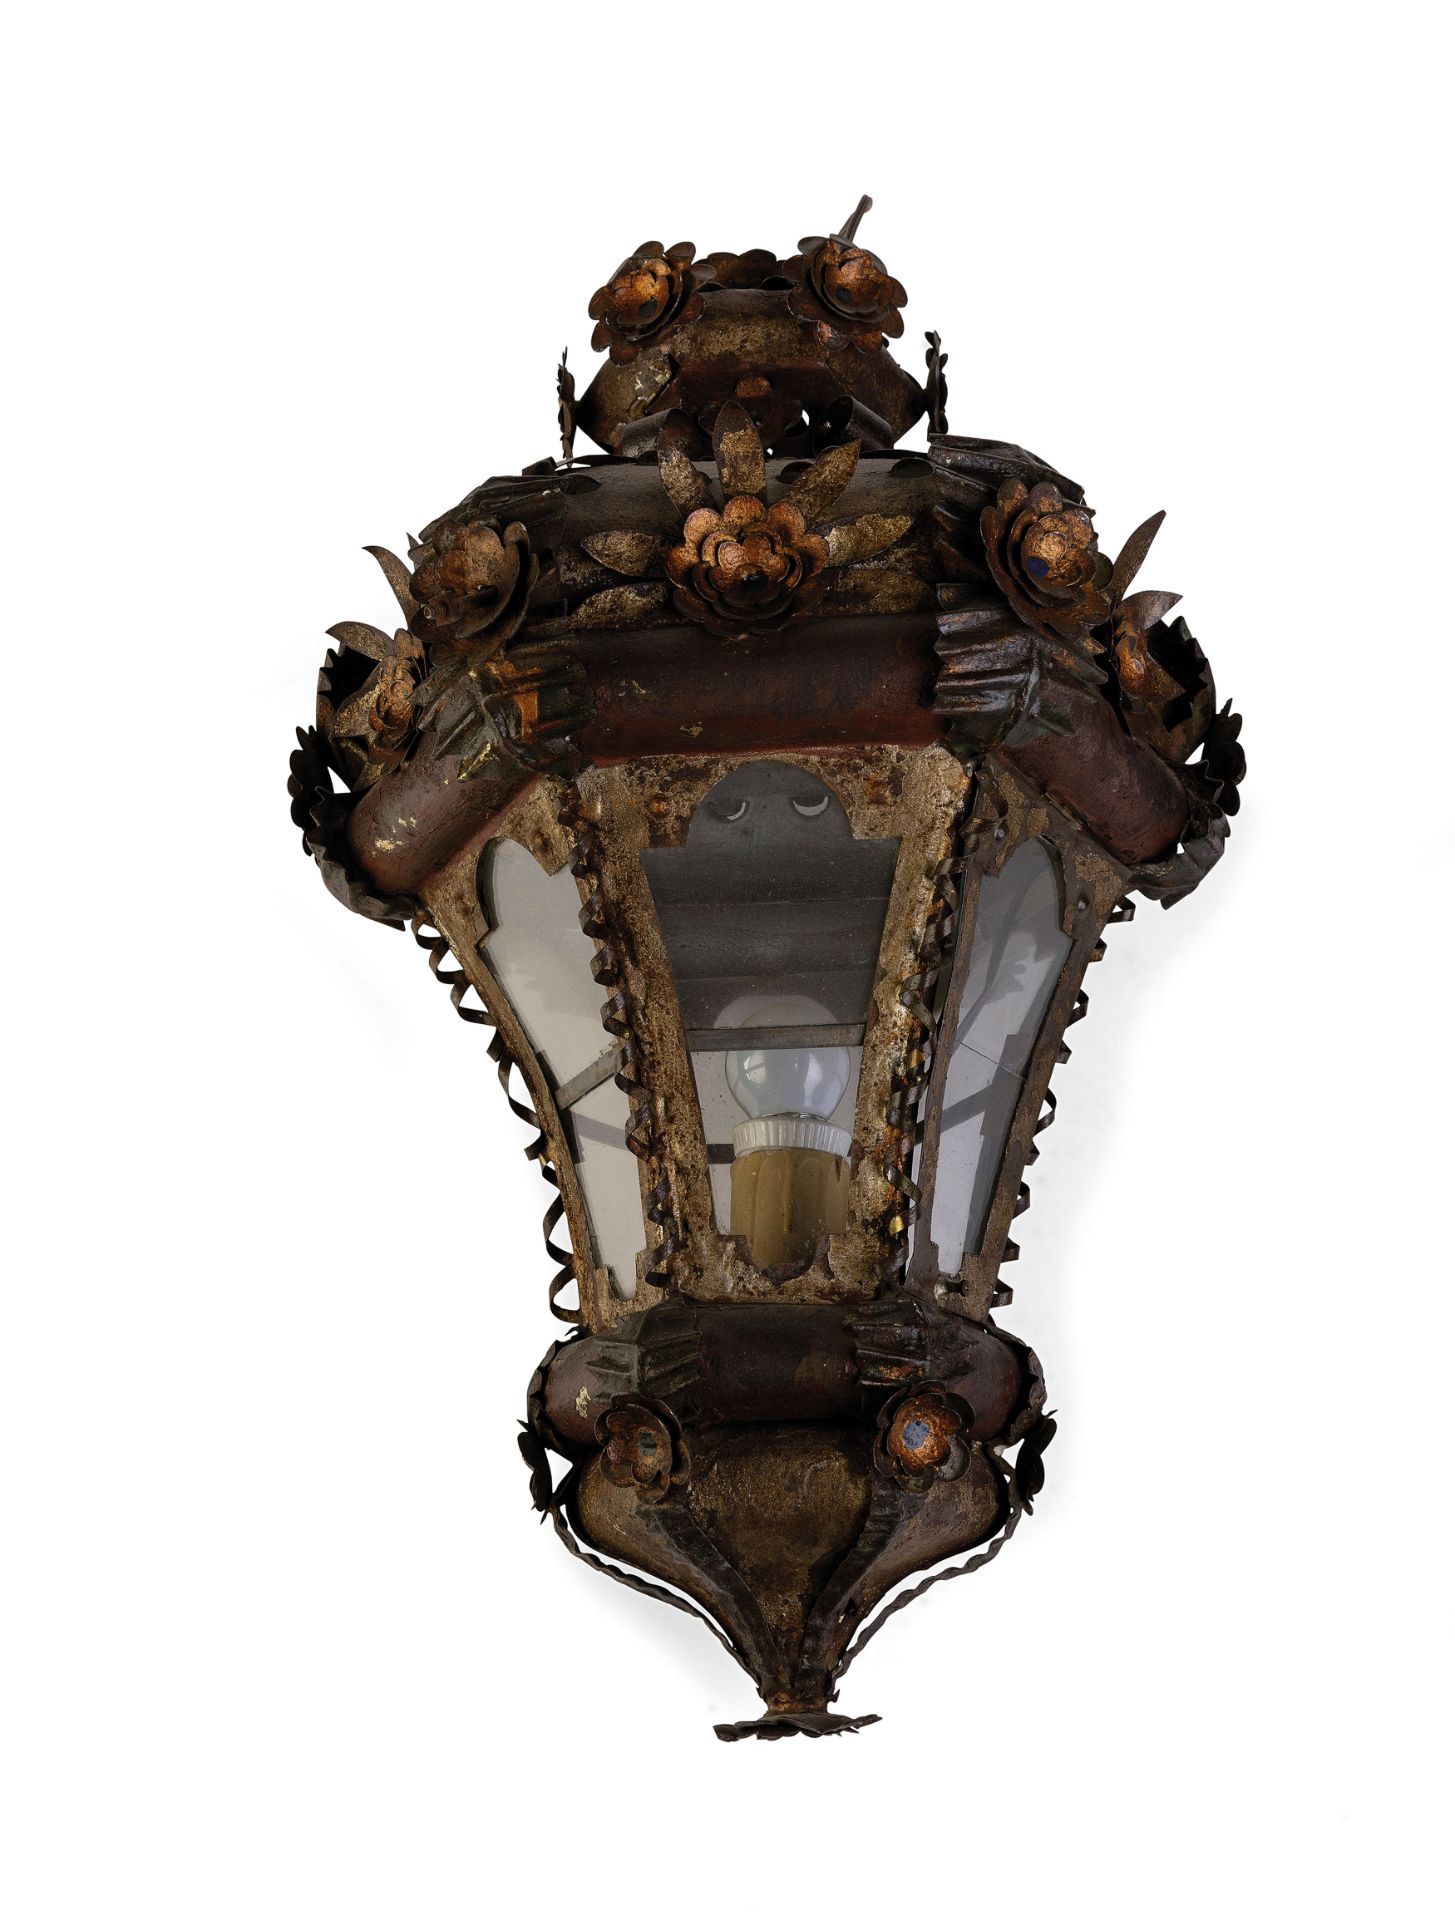 COPPIA DI LAMPIONI IN METALLO SBALZATO E DIPINTO, XVIII-XIX SECOLO